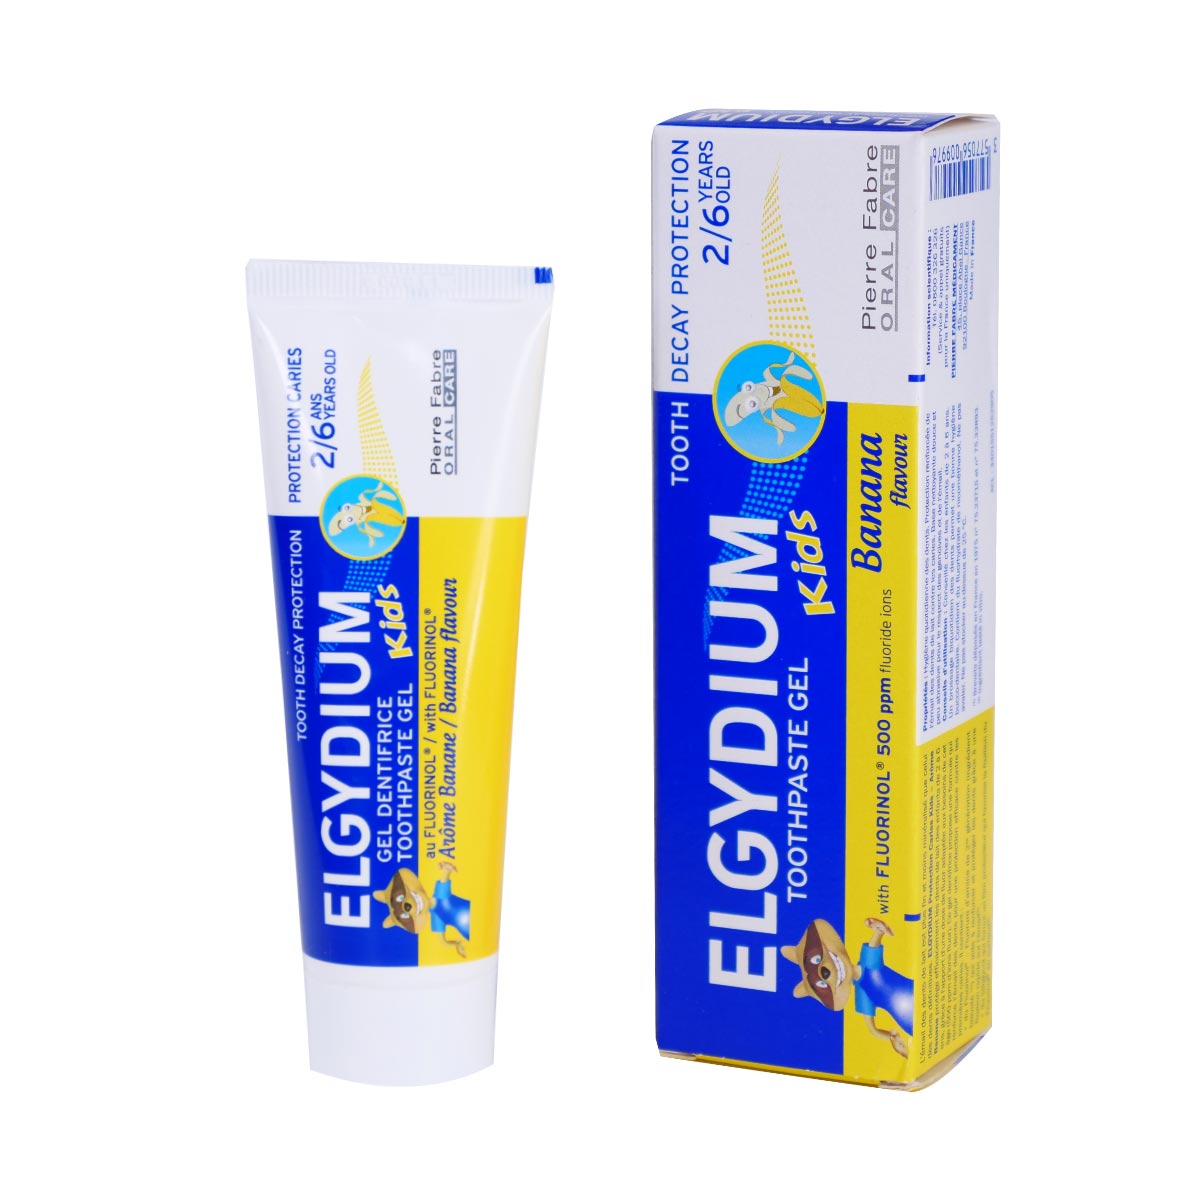 Зубная паста Эльгидиум зубная нить пьер фабр медикамент эльгидиум клиник черная 50м 40 г